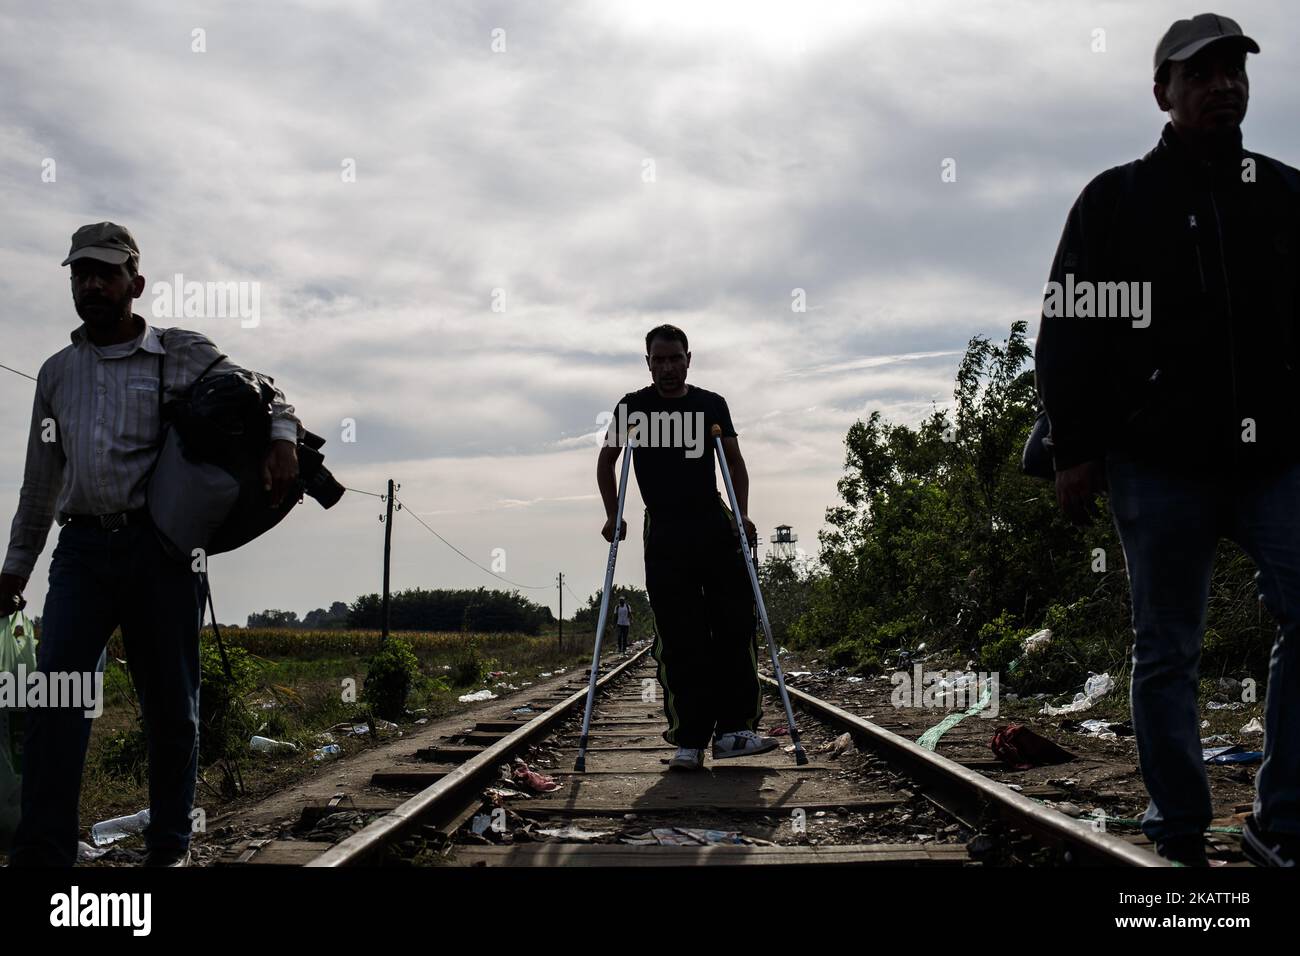 (9/14/2015) Serbia, Horgos. Refugiados discapacitados caminando hacia la frontera húngara. Hungría ha sido un importante país de tránsito para los migrantes, muchos de los cuales apuntan a continuar hacia Austria y Alemania. En 2015, Hungría construyó una barrera fronteriza en su frontera con Serbia y Croacia. La valla se construyó durante la crisis de los inmigrantes europeos con el objetivo de garantizar la seguridad fronteriza evitando que los refugiados y los inmigrantes entren ilegalmente, y permitiendo la opción de entrar a través de los puestos de control oficiales y solicitar asilo en Hungría, de conformidad con la legislación internacional y europea. El número de participantes ilegales Foto de stock